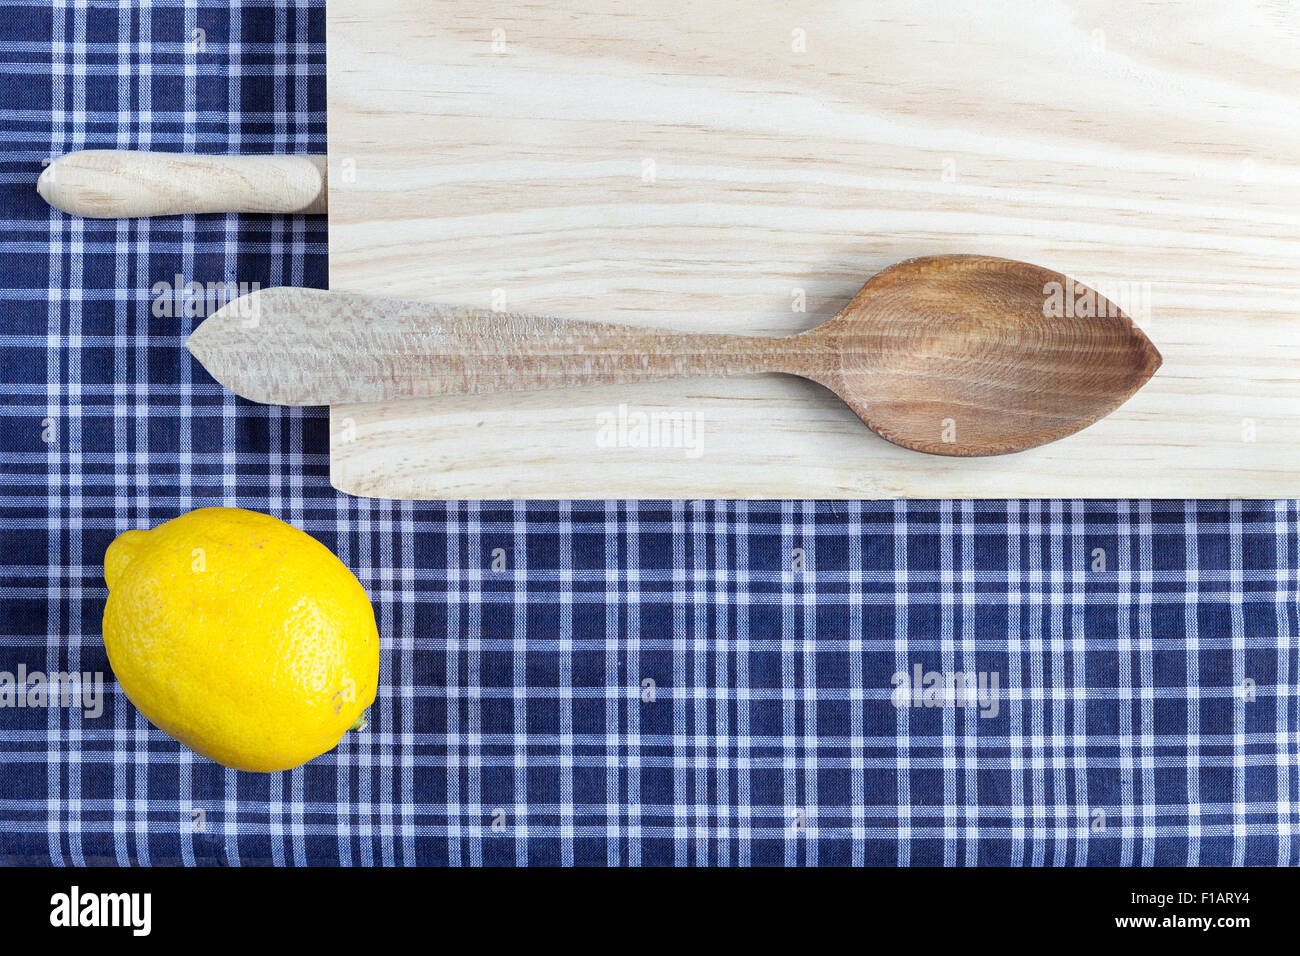 La tabella e il cucchiaio di legno su una tovaglia blu Foto Stock